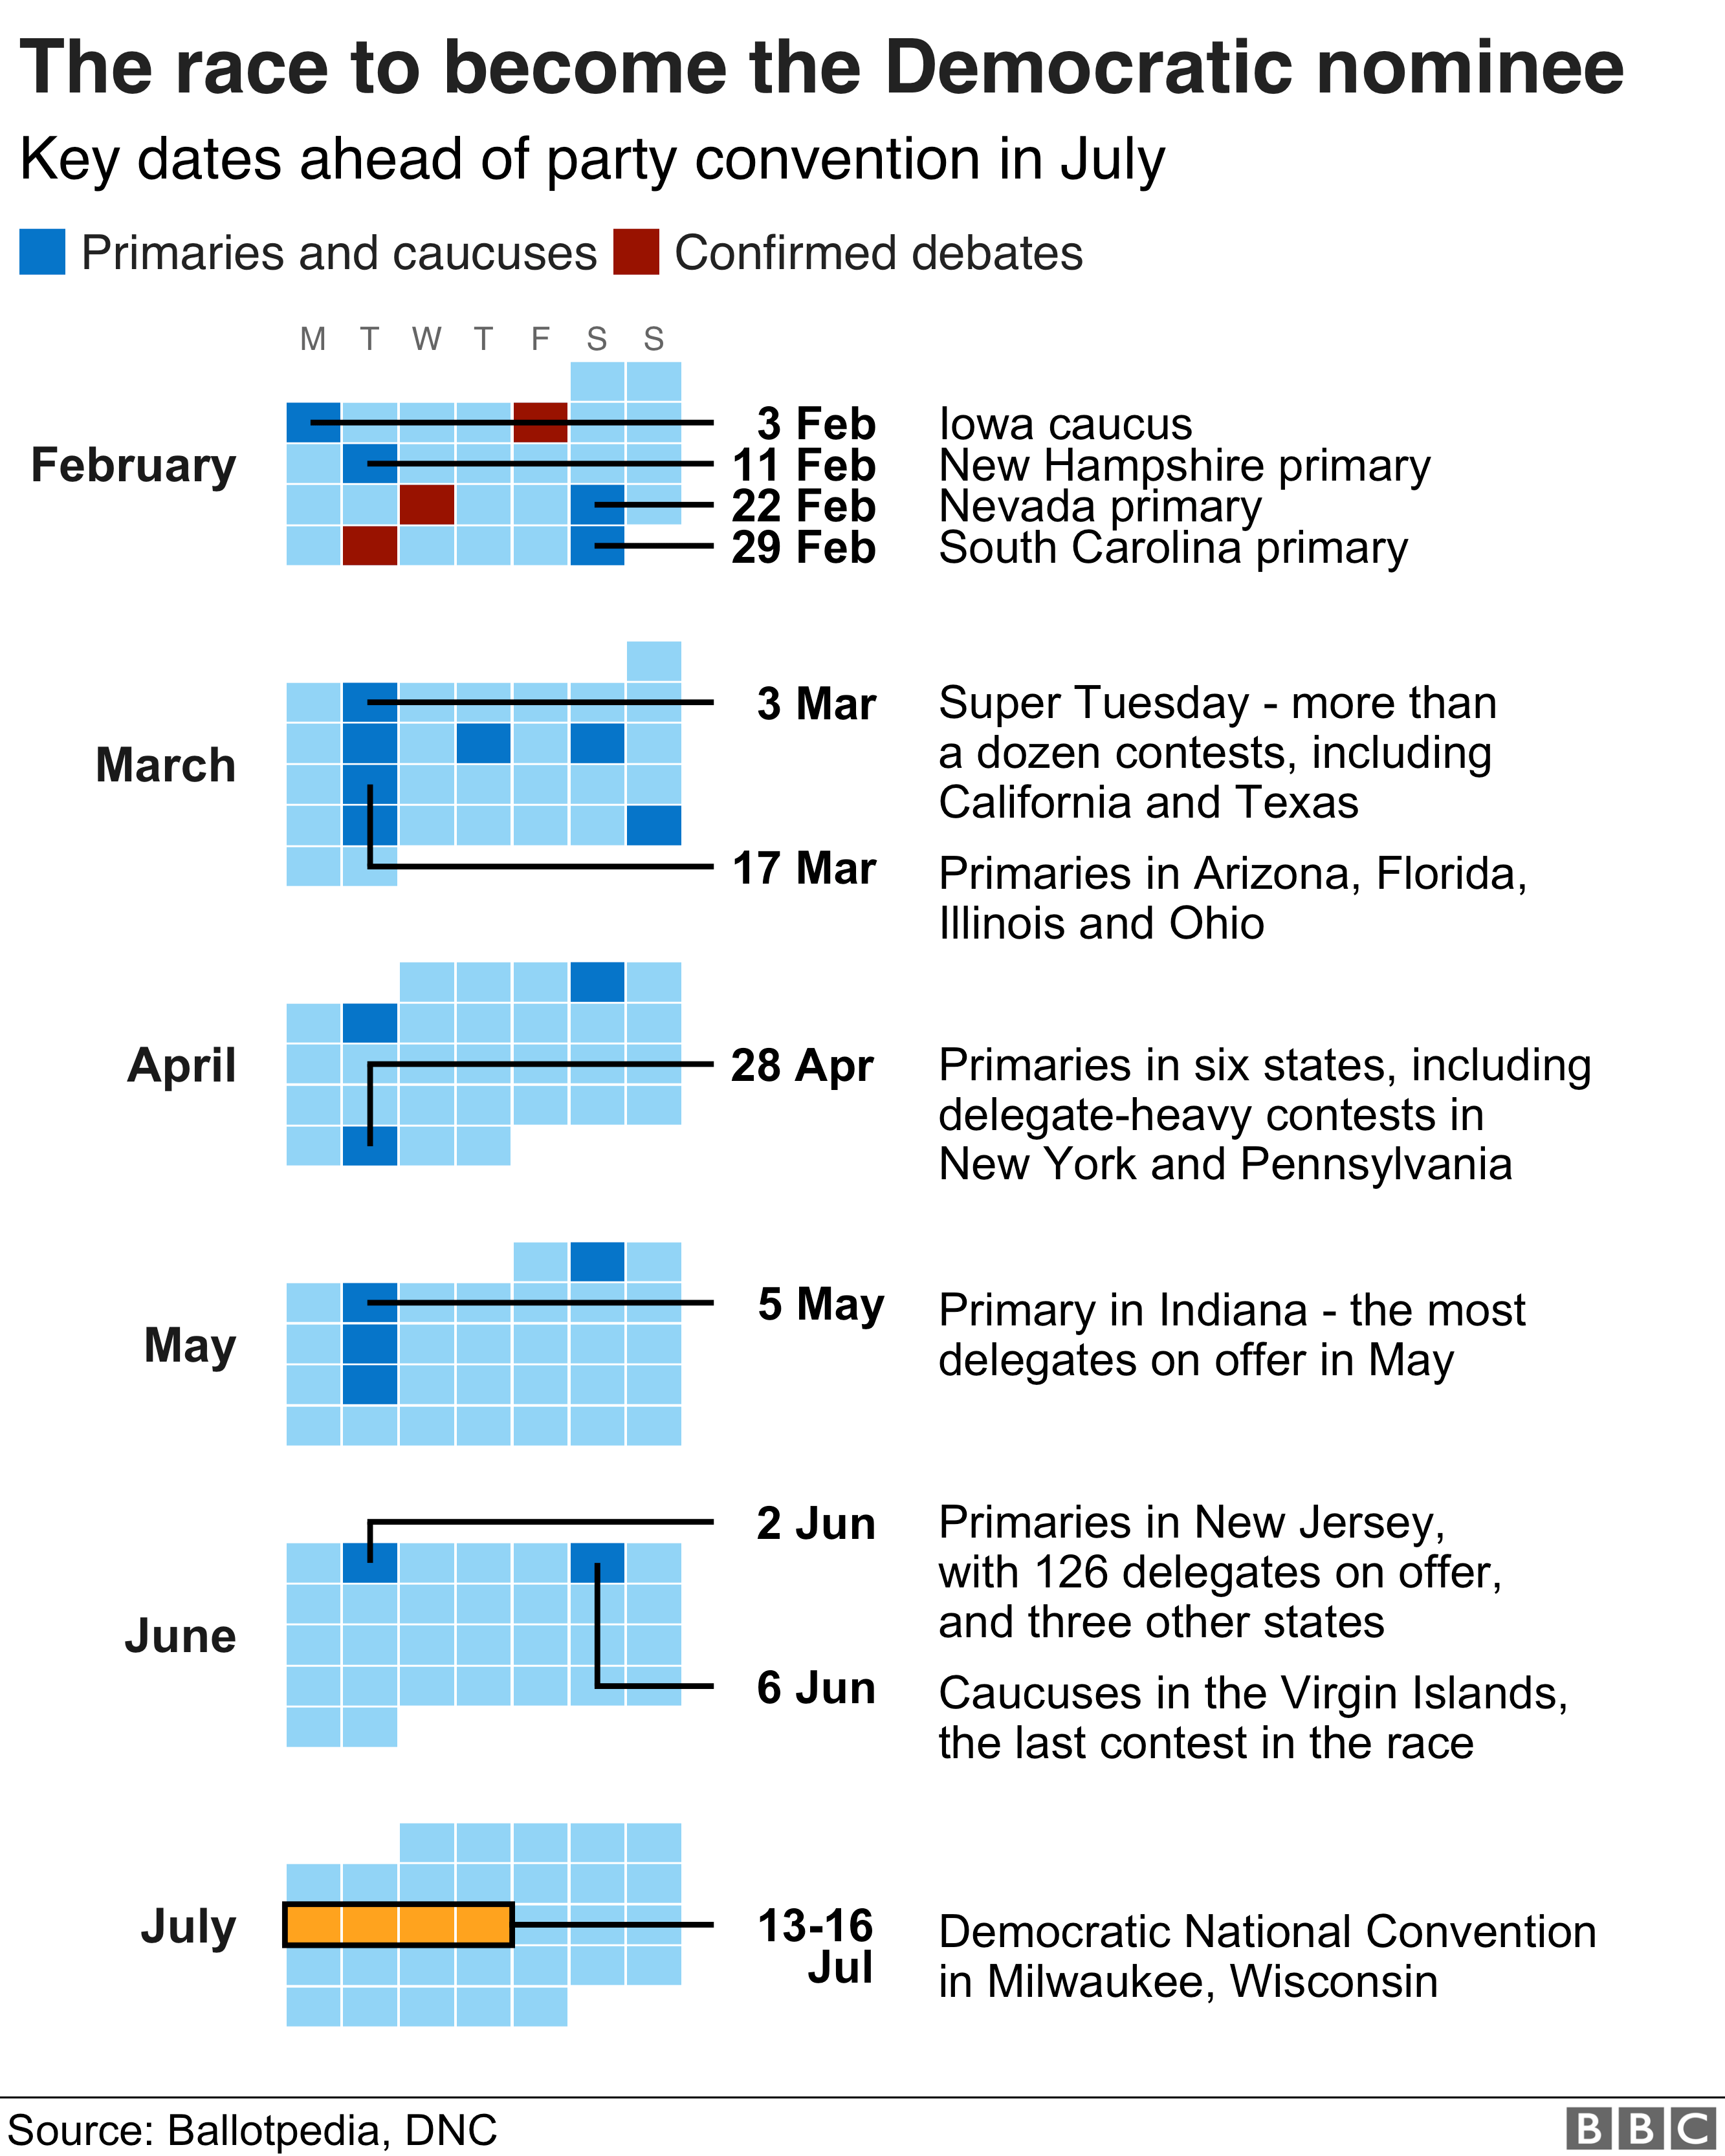 График календаря, показывающий некоторые ключевые даты в подготовке к Демократическому национальному съезду в июле | ||